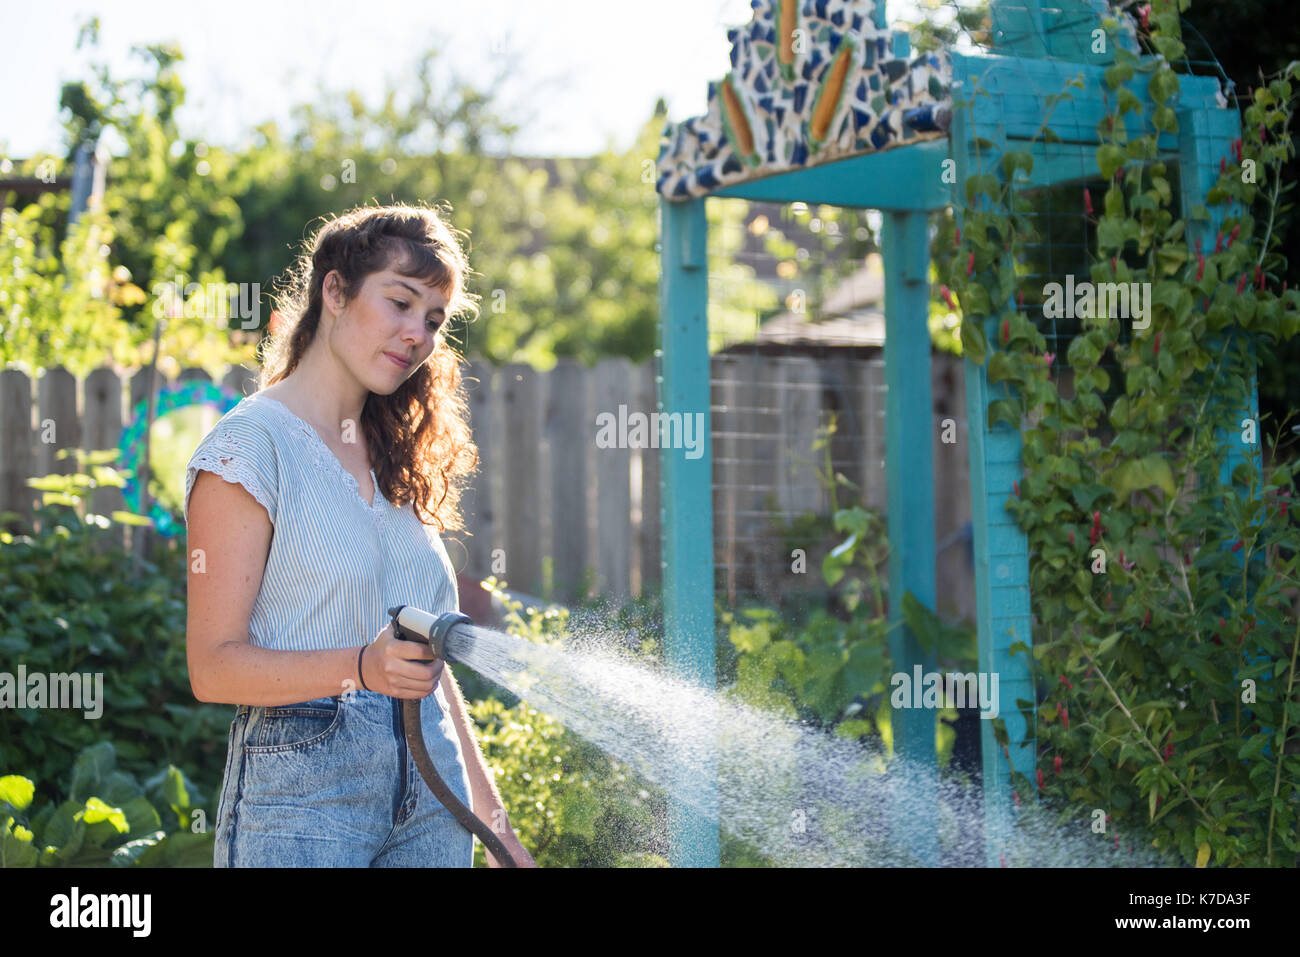 Woman watering plants in garden en utilisant le tuyau flexible Banque D'Images